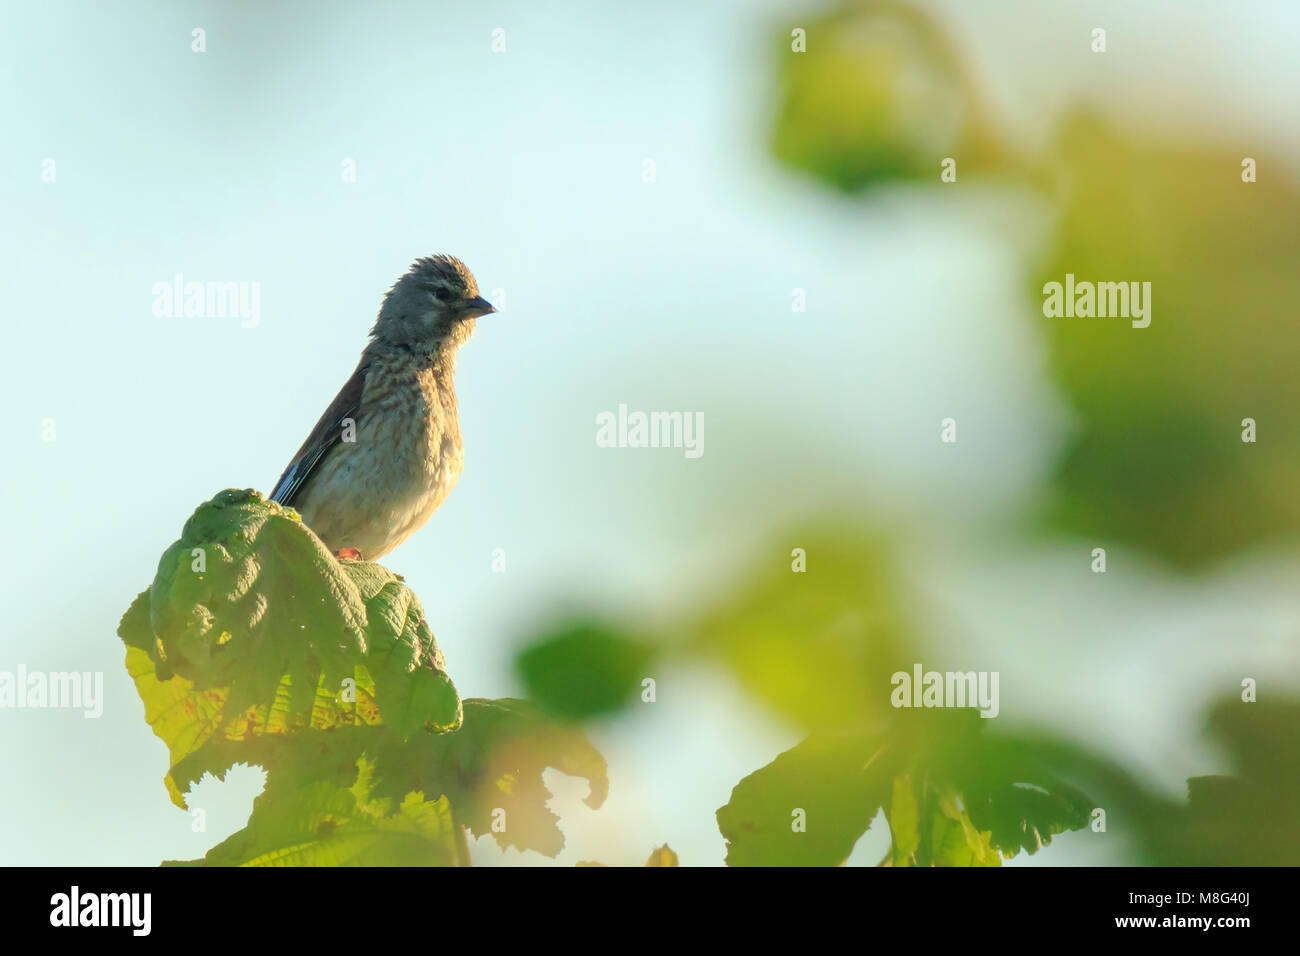 Closeup Portrait einer hänfling Vogel, Carduelis cannabina, Display und die Suche nach einem Gehilfen im Frühling Saison. Das Singen im frühen Sonnenlicht. Stockfoto